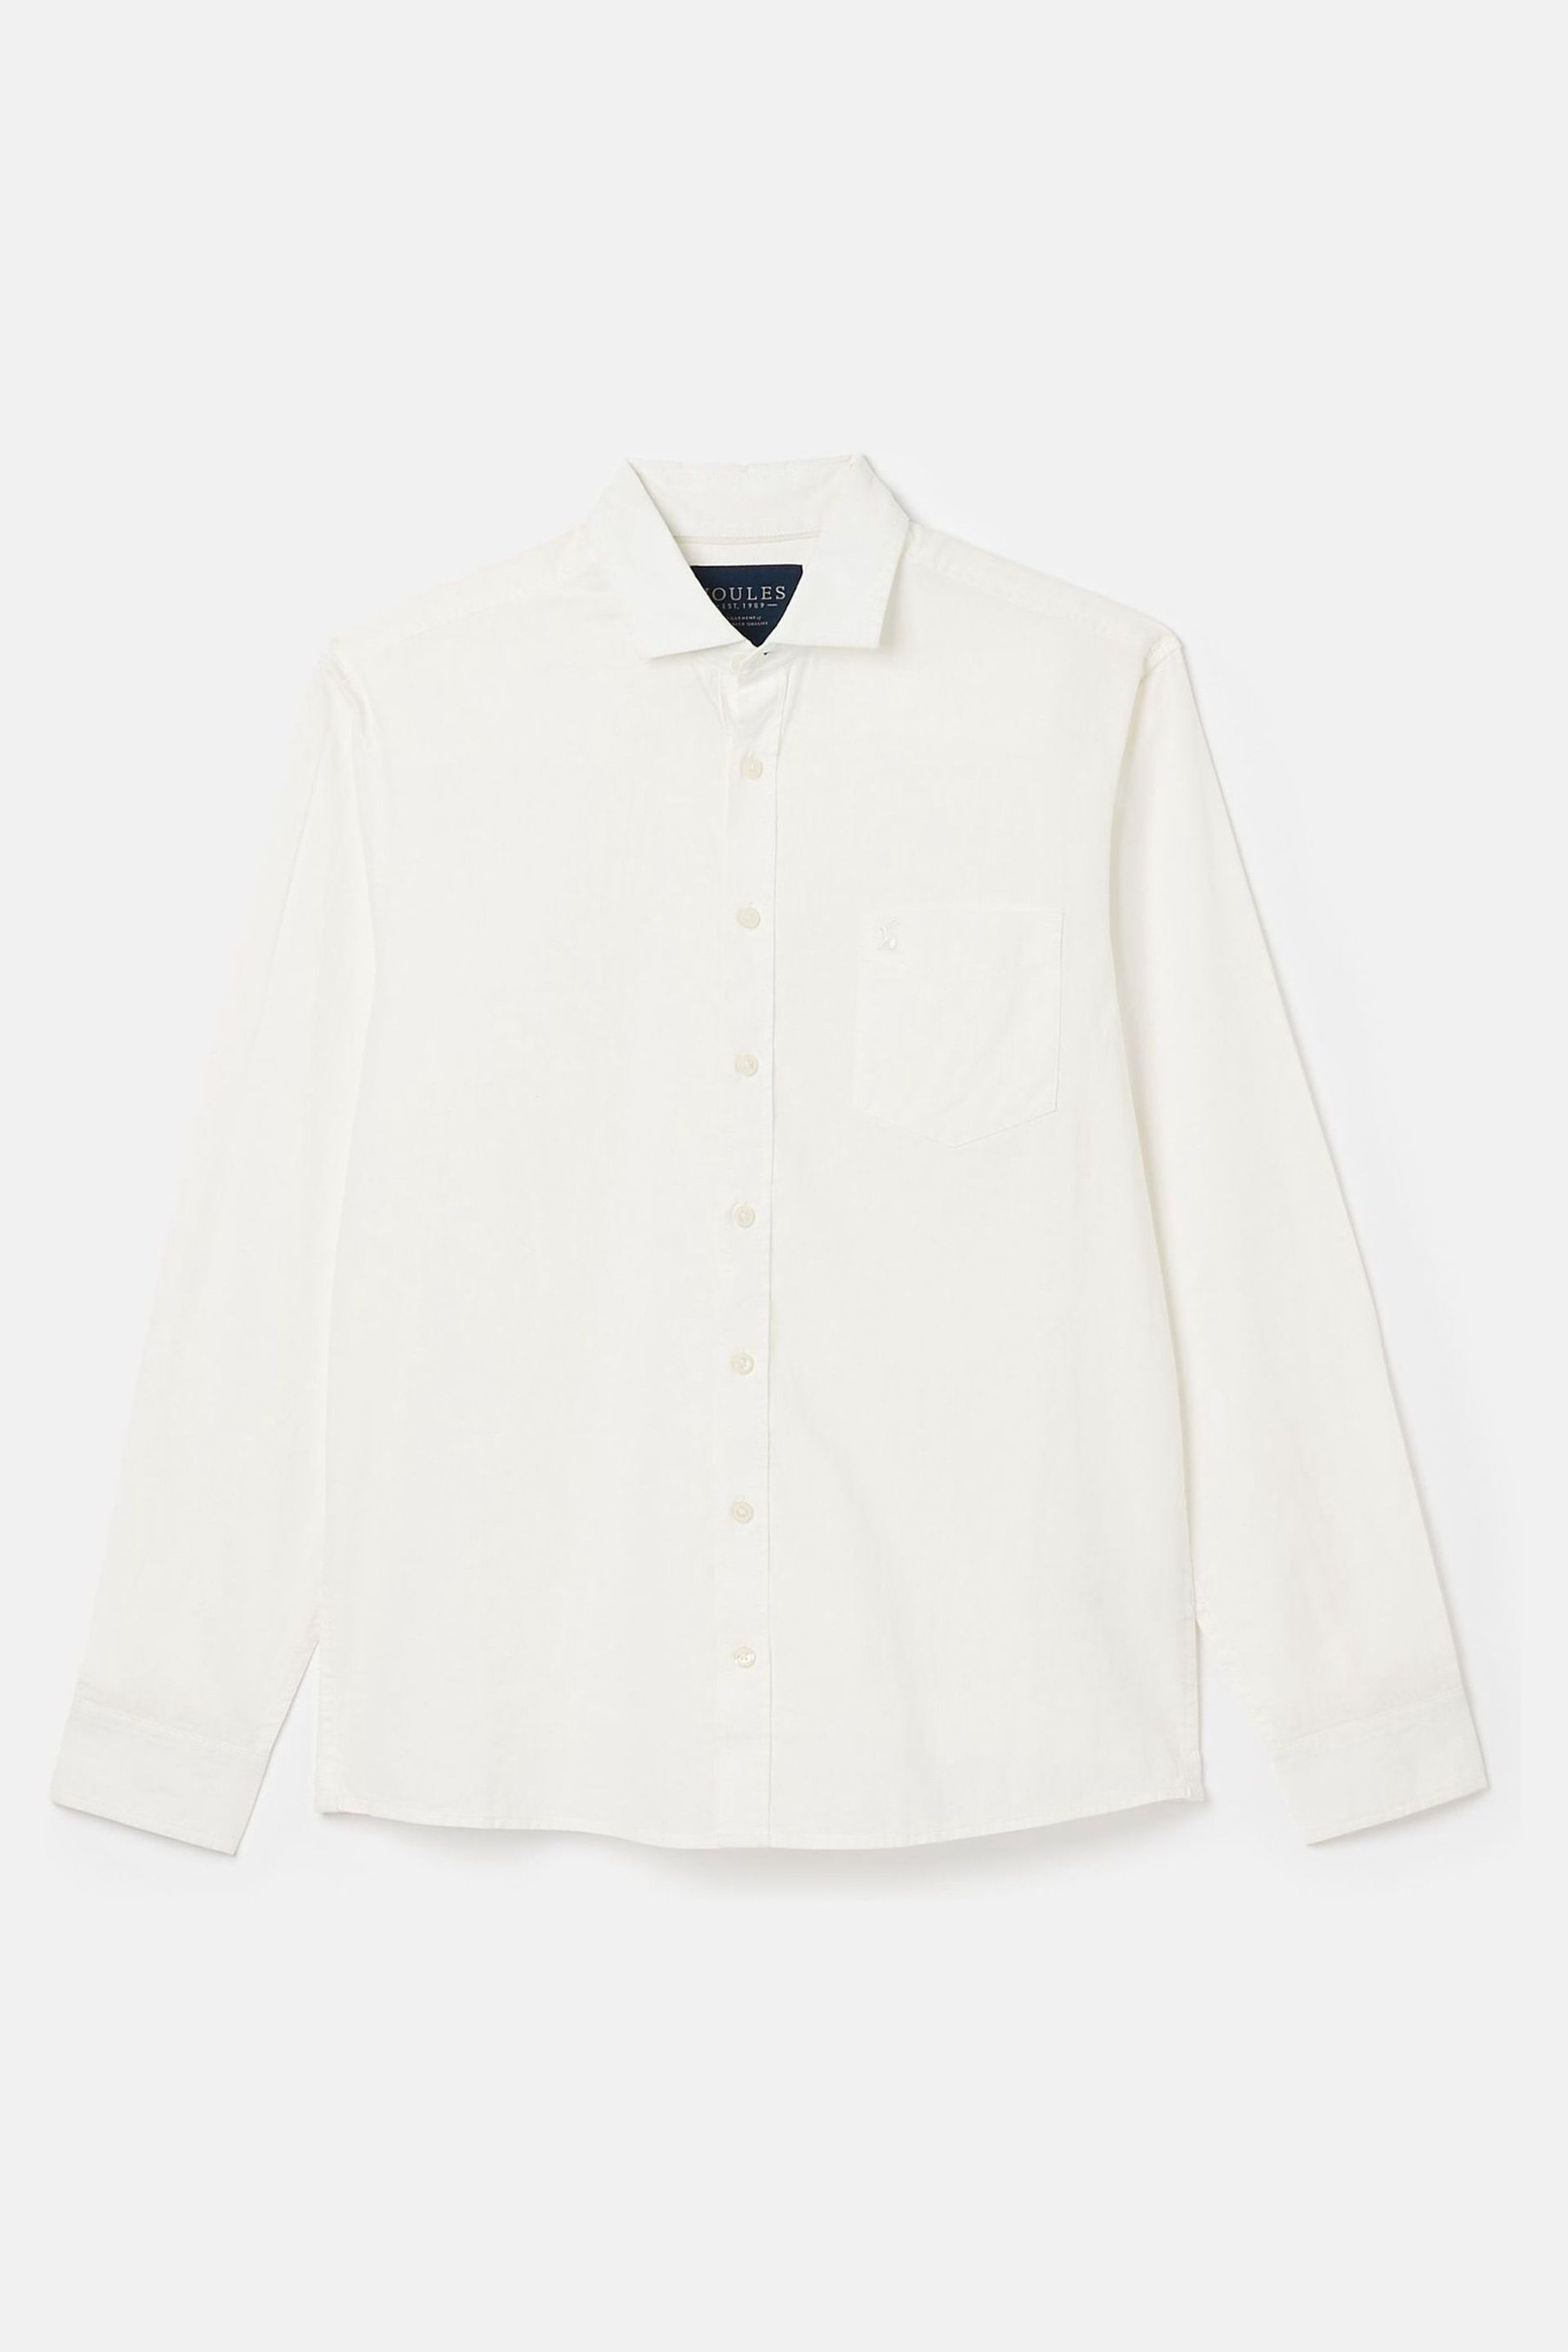 Joules Linen Blend White Plain Long Sleeve Shirt - Image 4 of 4